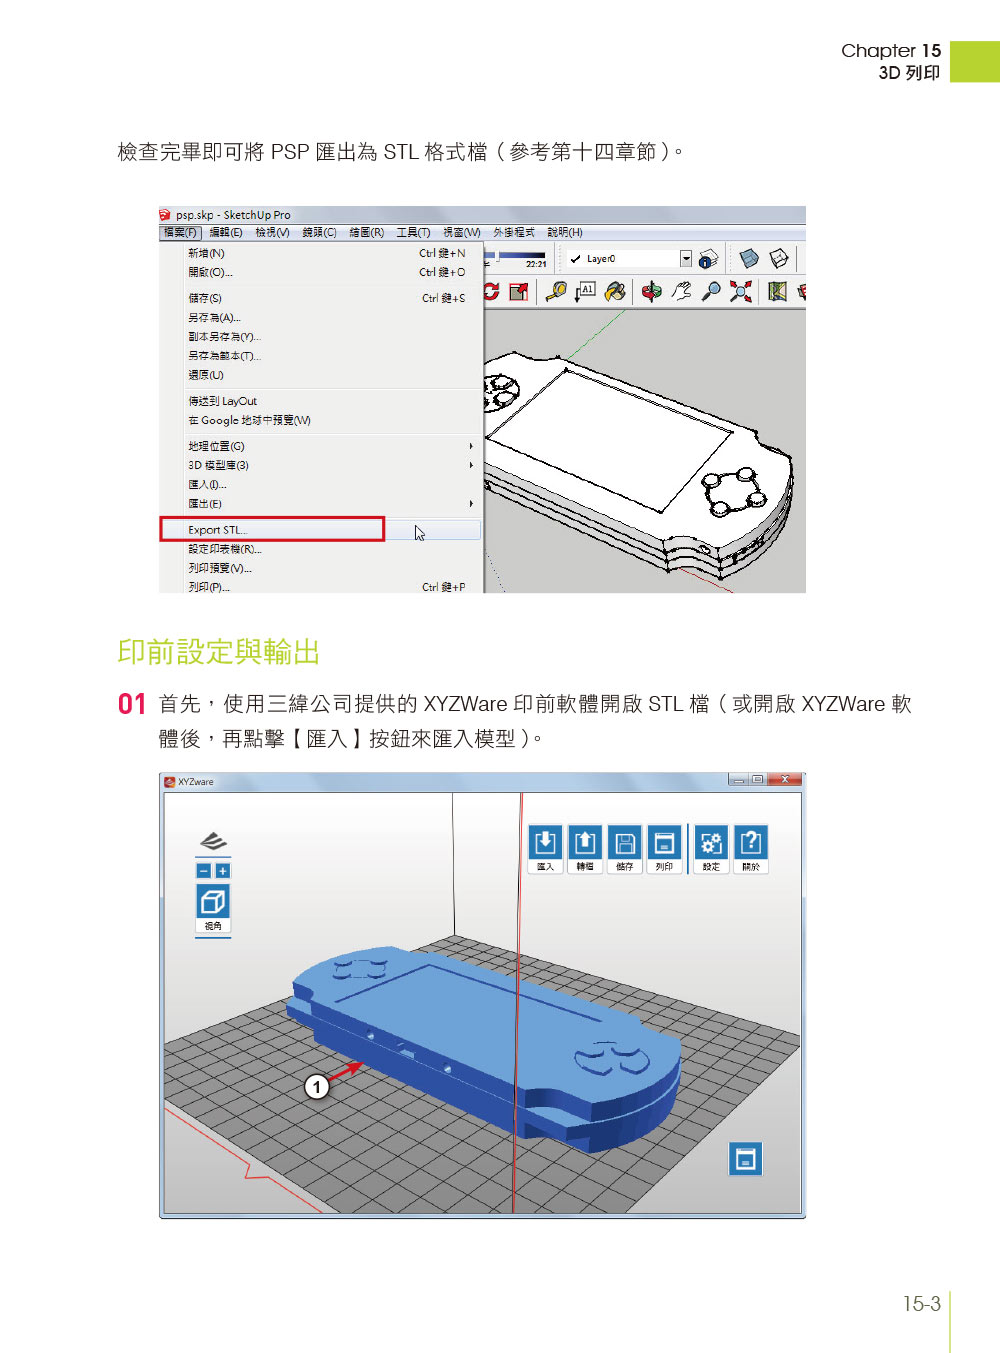 ►GO►最新優惠► 【書籍】超簡單！SketchUp 2014 3D設計速繪美學(從產品設計到3D列印的快速自造力) (附超過3小時基礎與關鍵操作影音教學/範例檔)